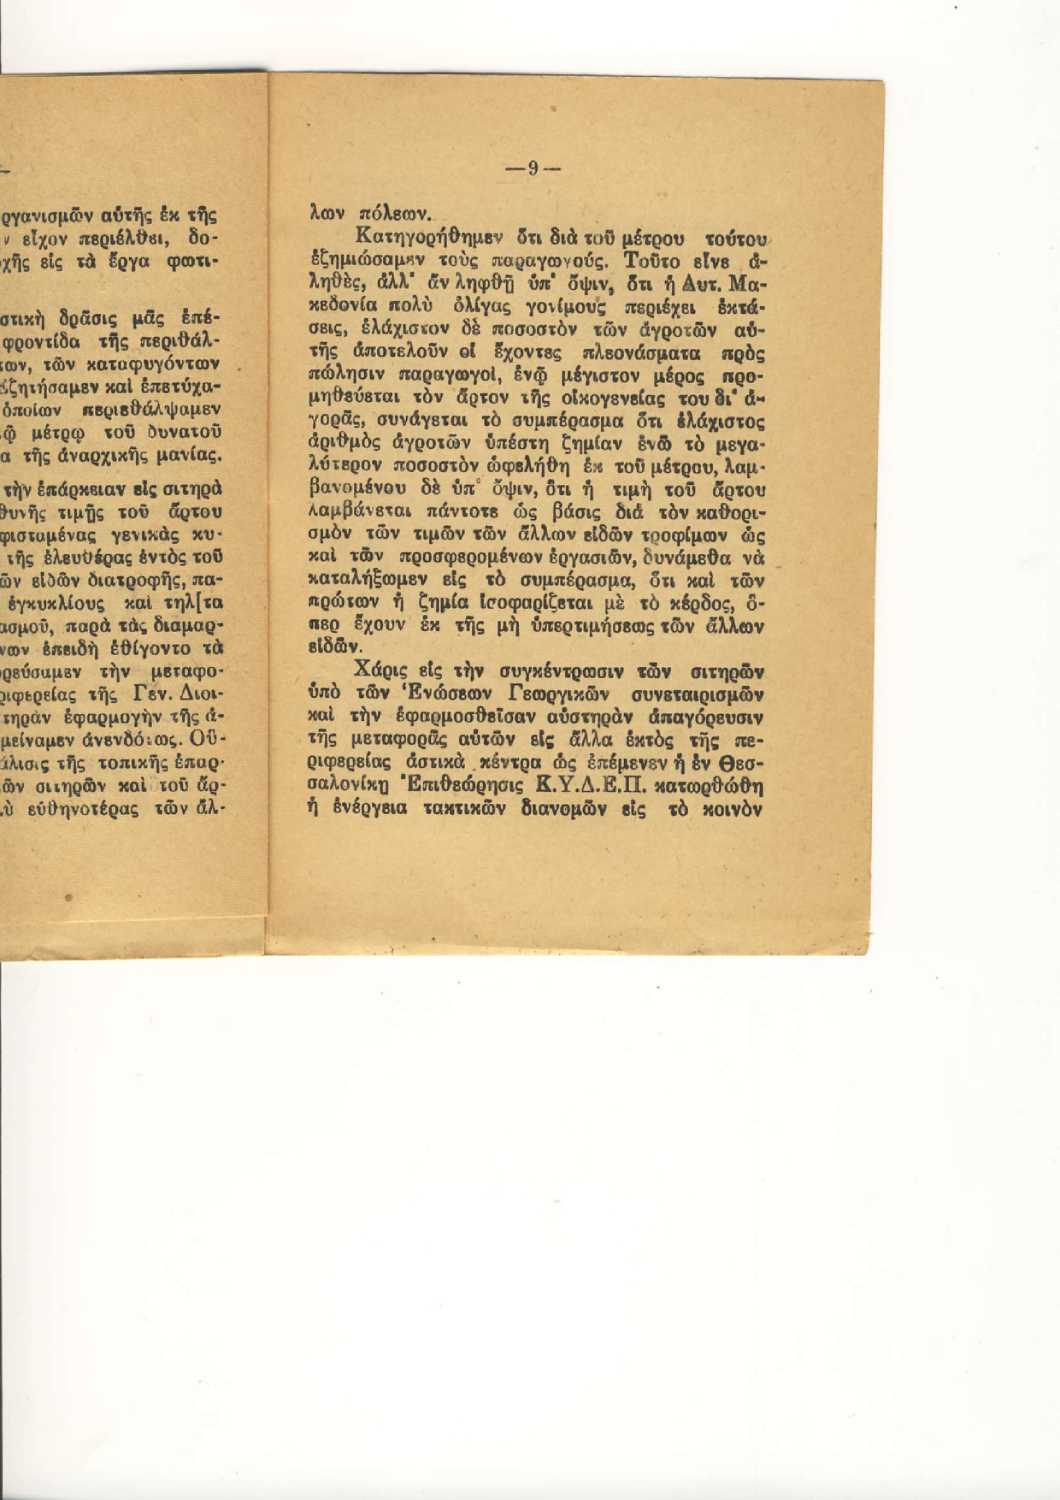 ΑΠΟΧΑΙΡΕΤΙΣΜΟΣ Γ.Δ.Δ.Μ ΦΕΒΡΟΥΑΡΙΟΣ 1947 (9)